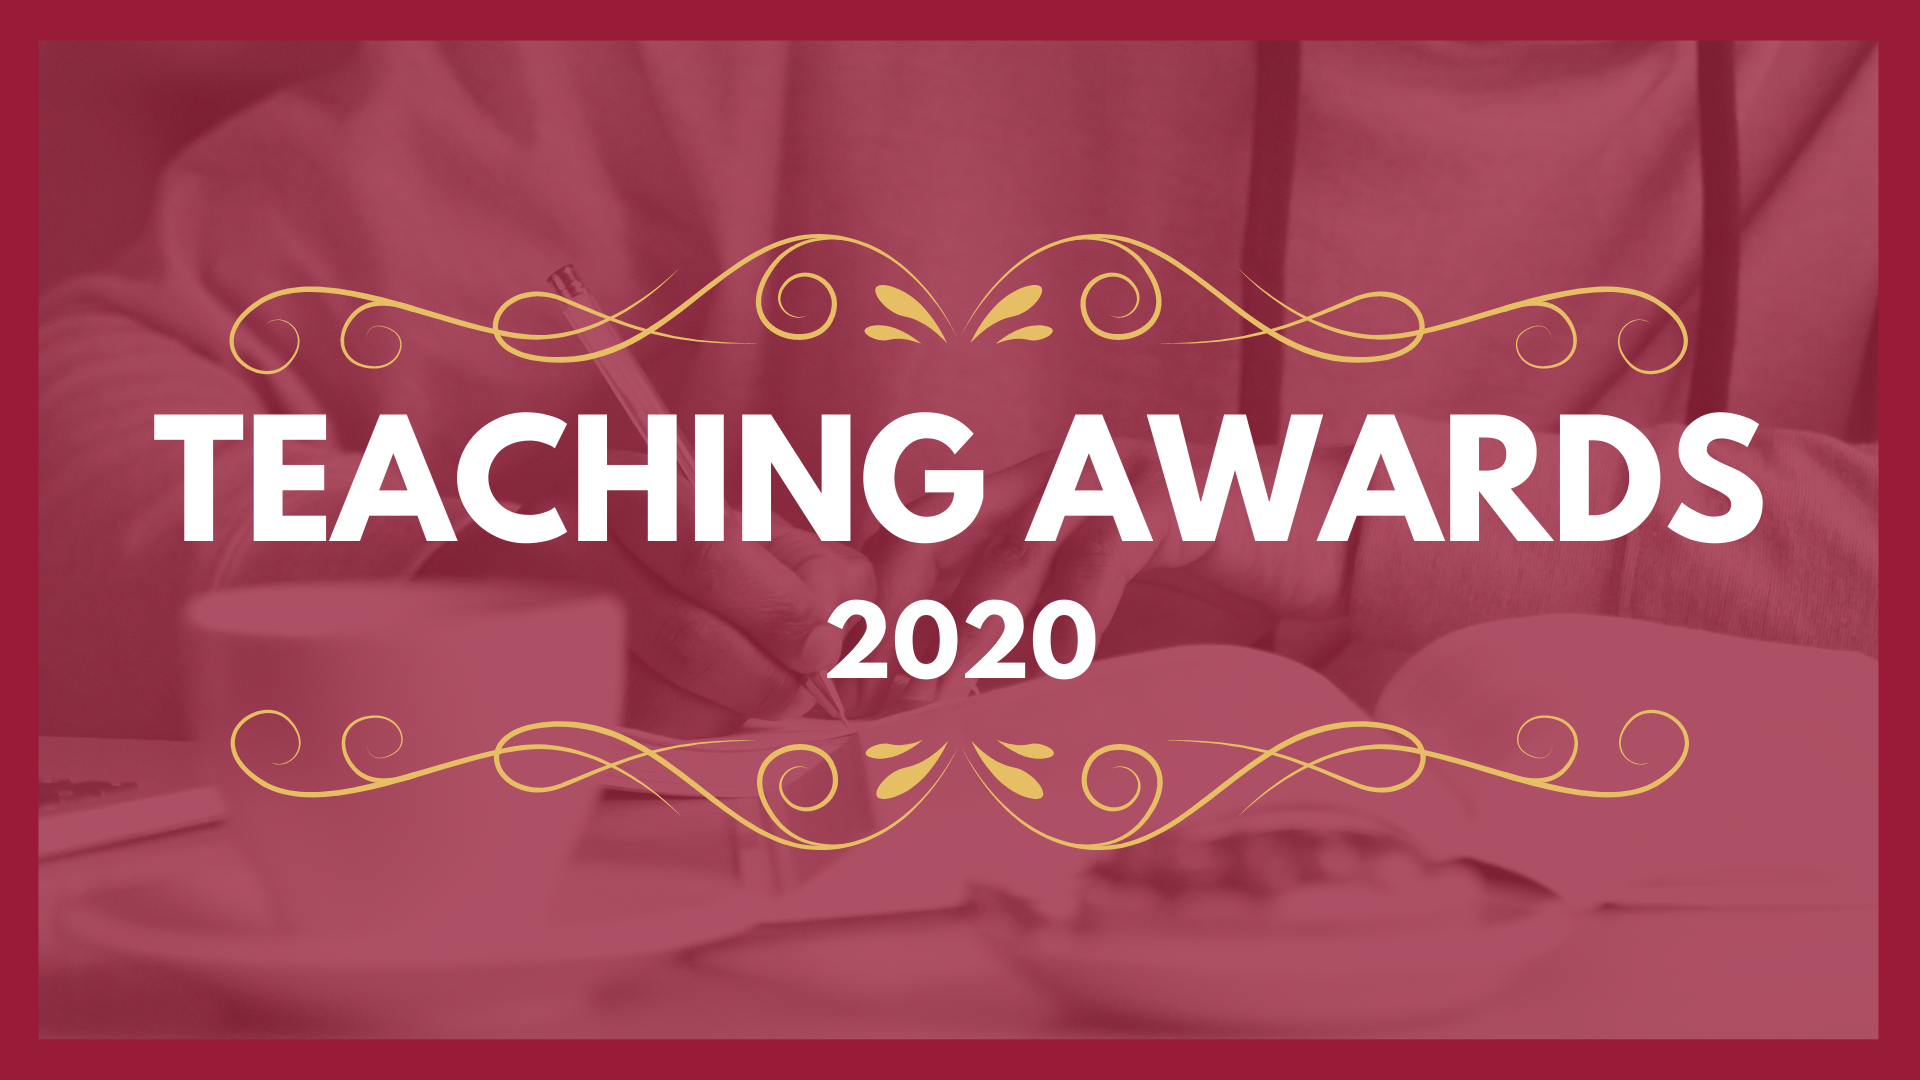 Teaching awards 2020